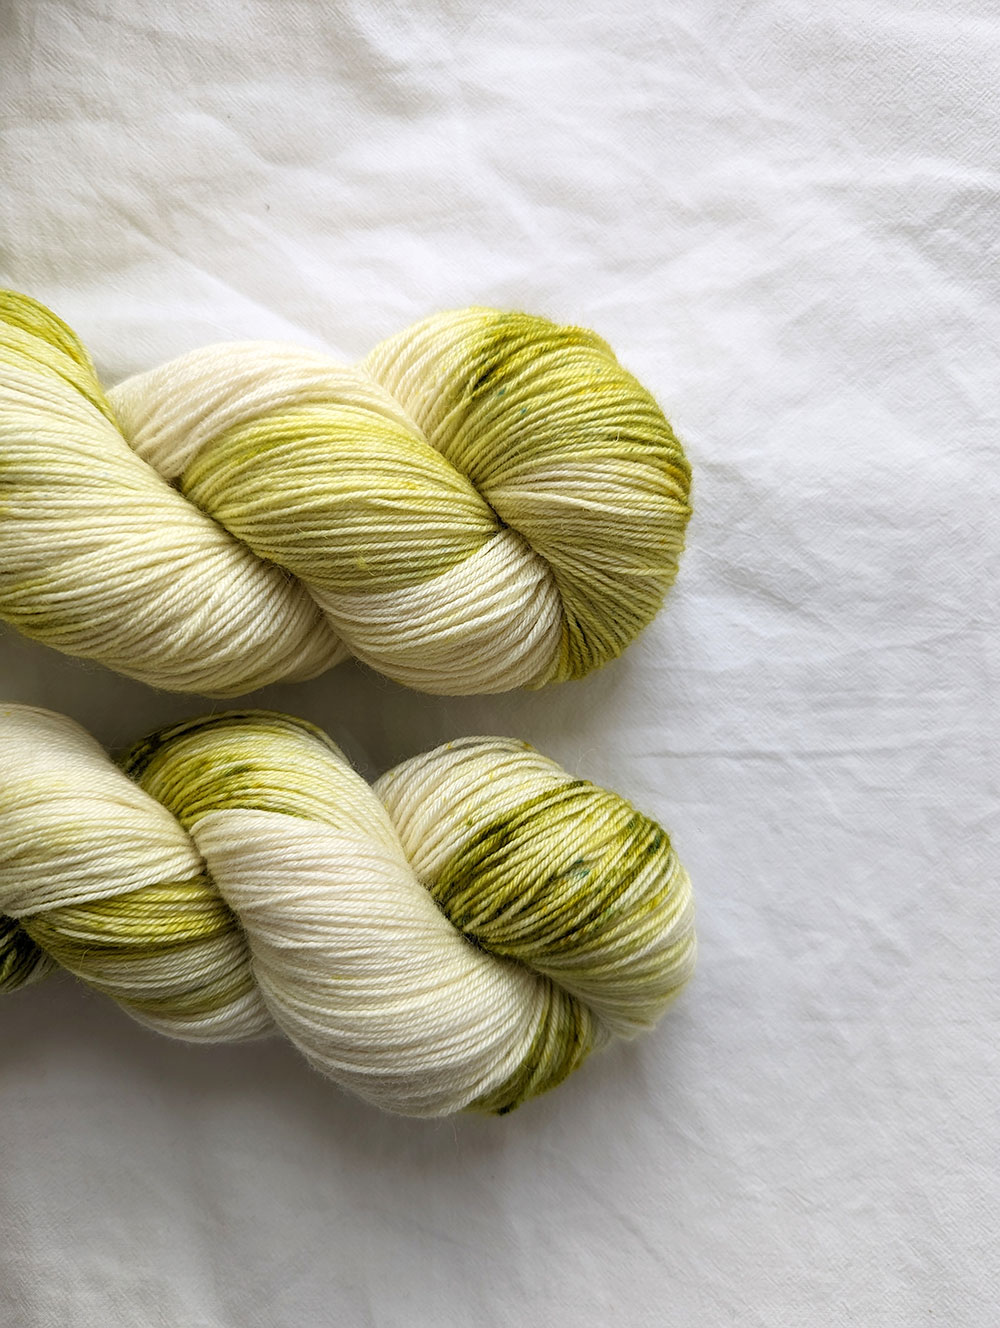 Speckle Me Irish - Handdyed Yarn / Hand dyed Yarn, Bulky Yarn, Wool Yarn, Speckled  Yarn - St. Patick's Day - Single Ply Chunky Yarn – 100g — Craftily Dyed Yarn